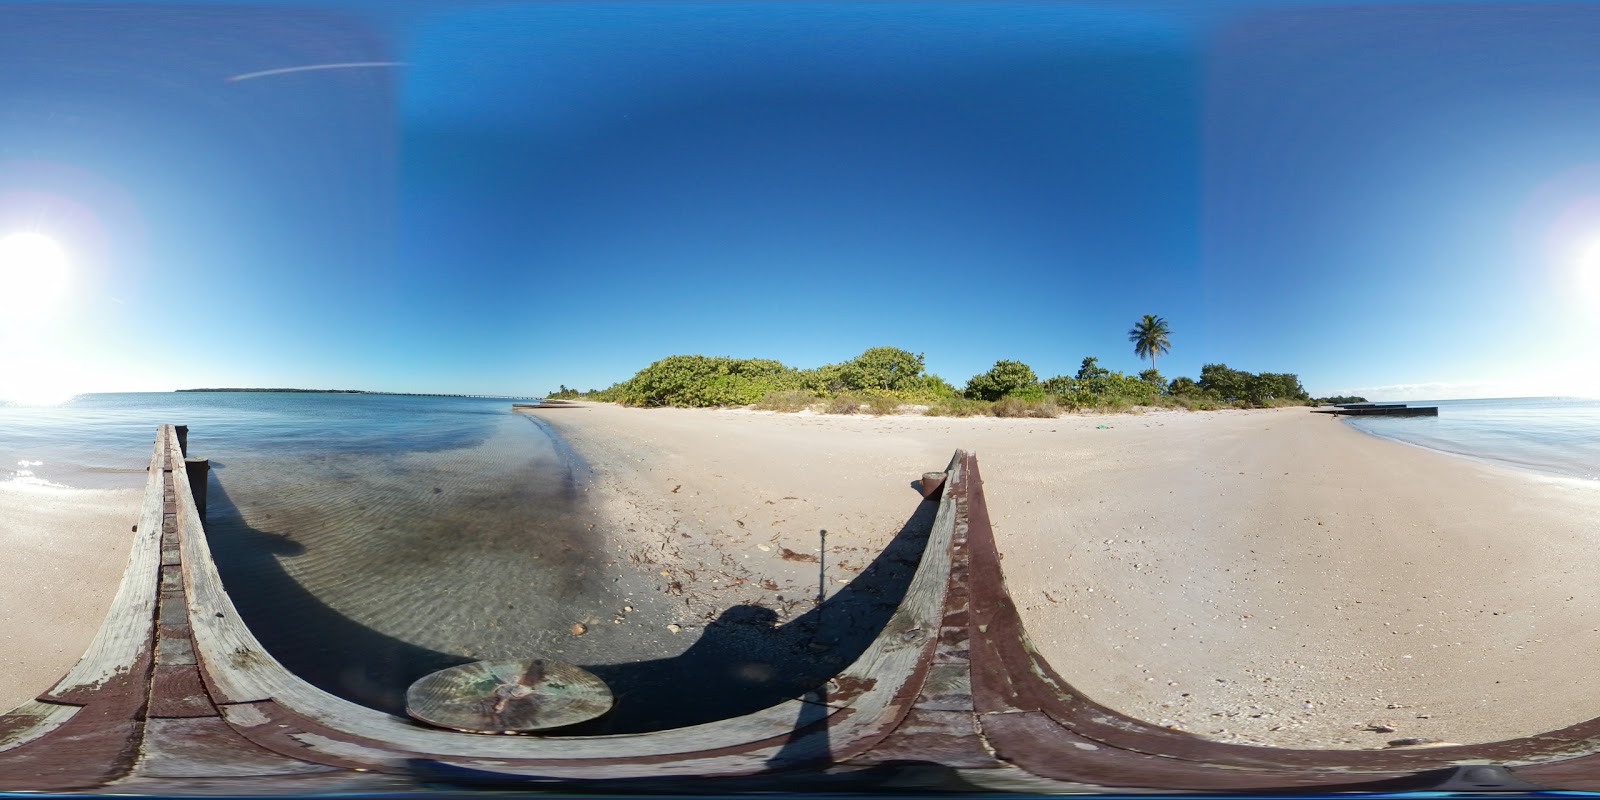 Fotografie cu Virginia Key beach - locul popular printre cunoscătorii de relaxare